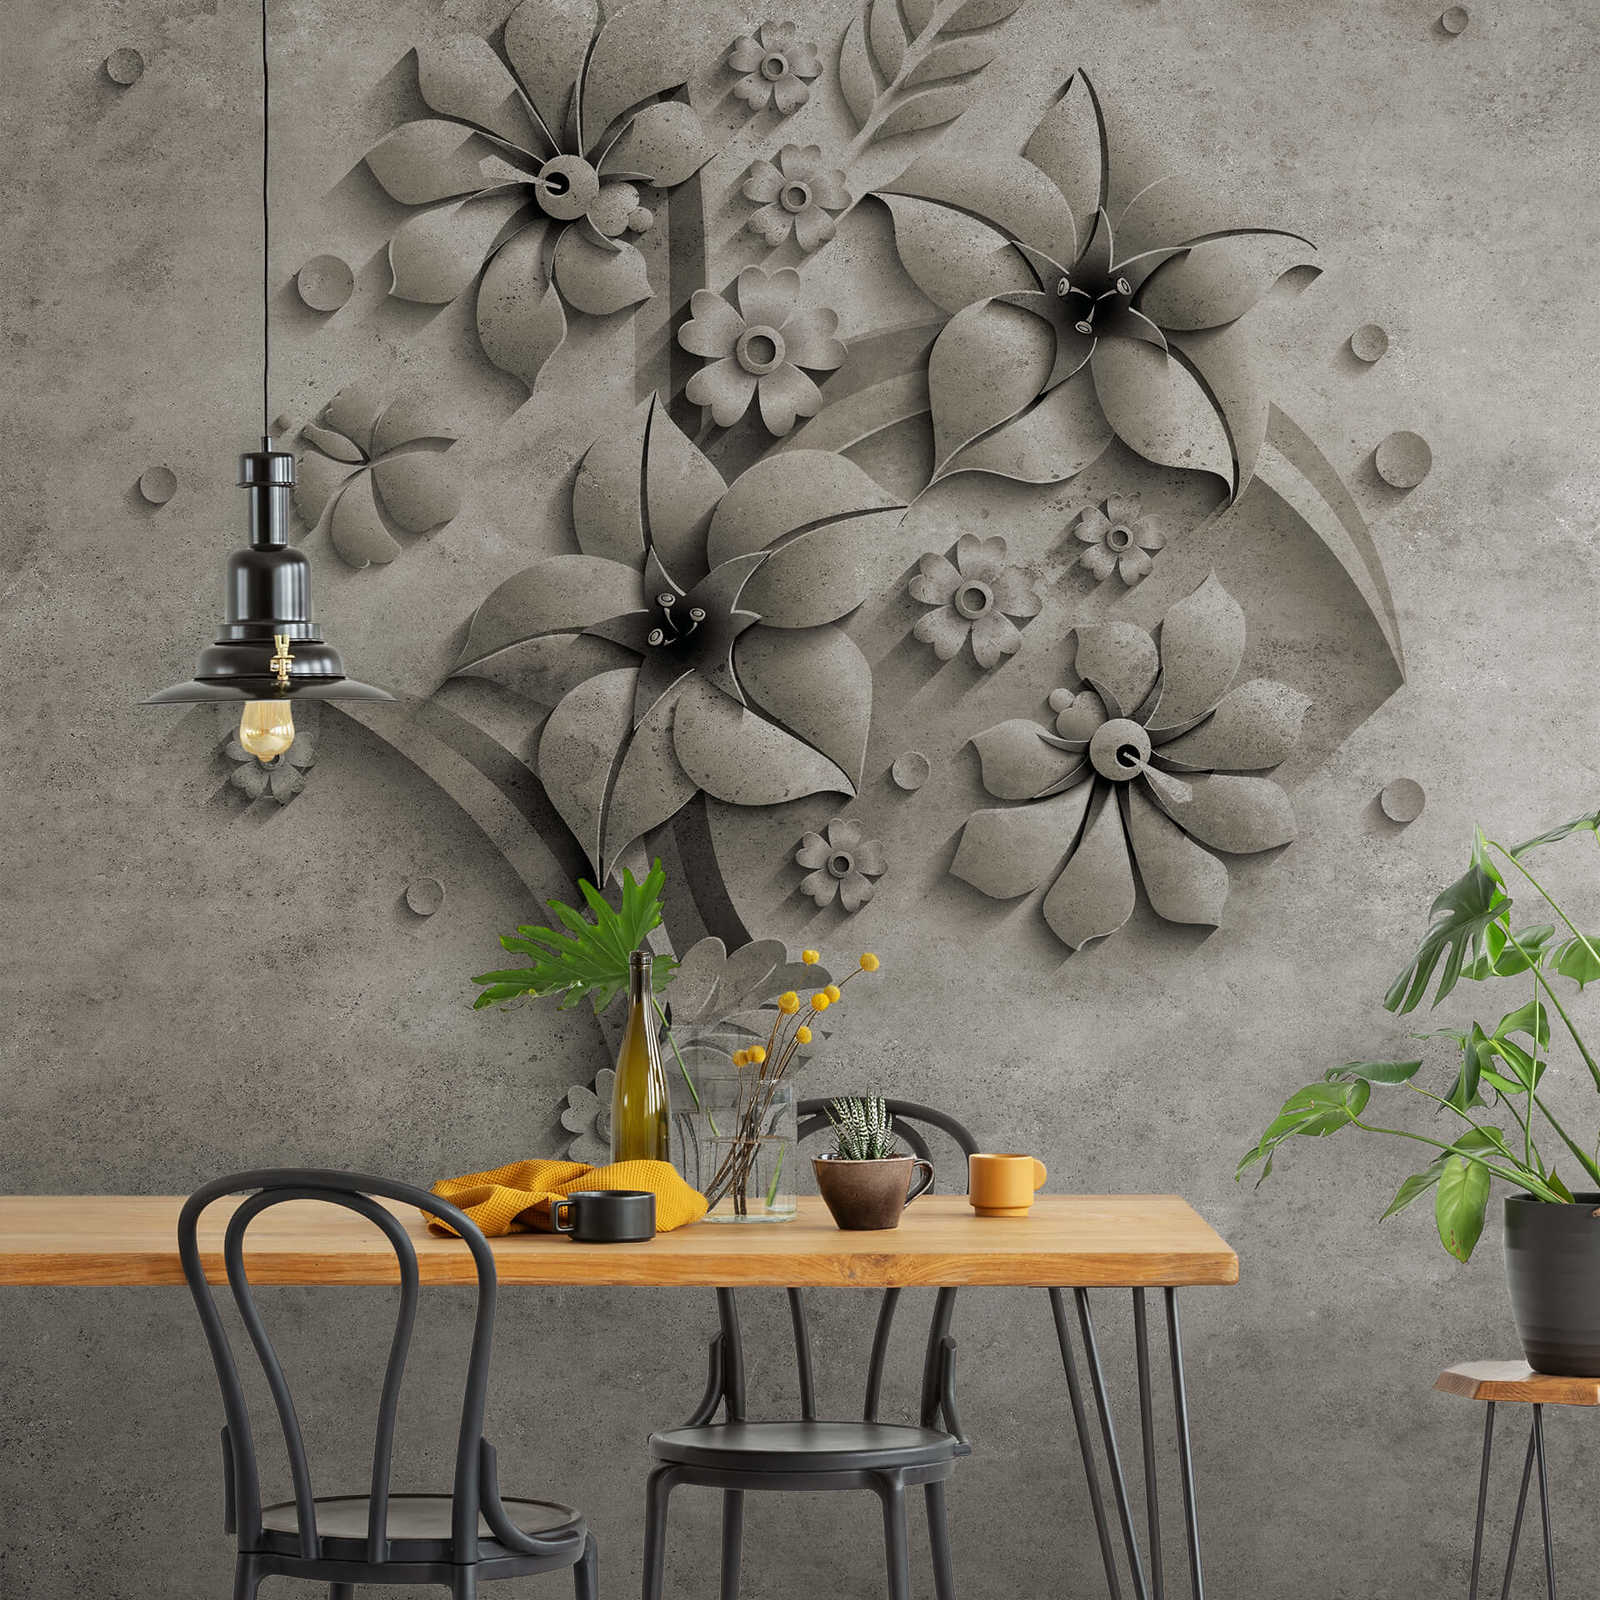             Fototapete Blumen auf Stein mit Betonoptik Design
        